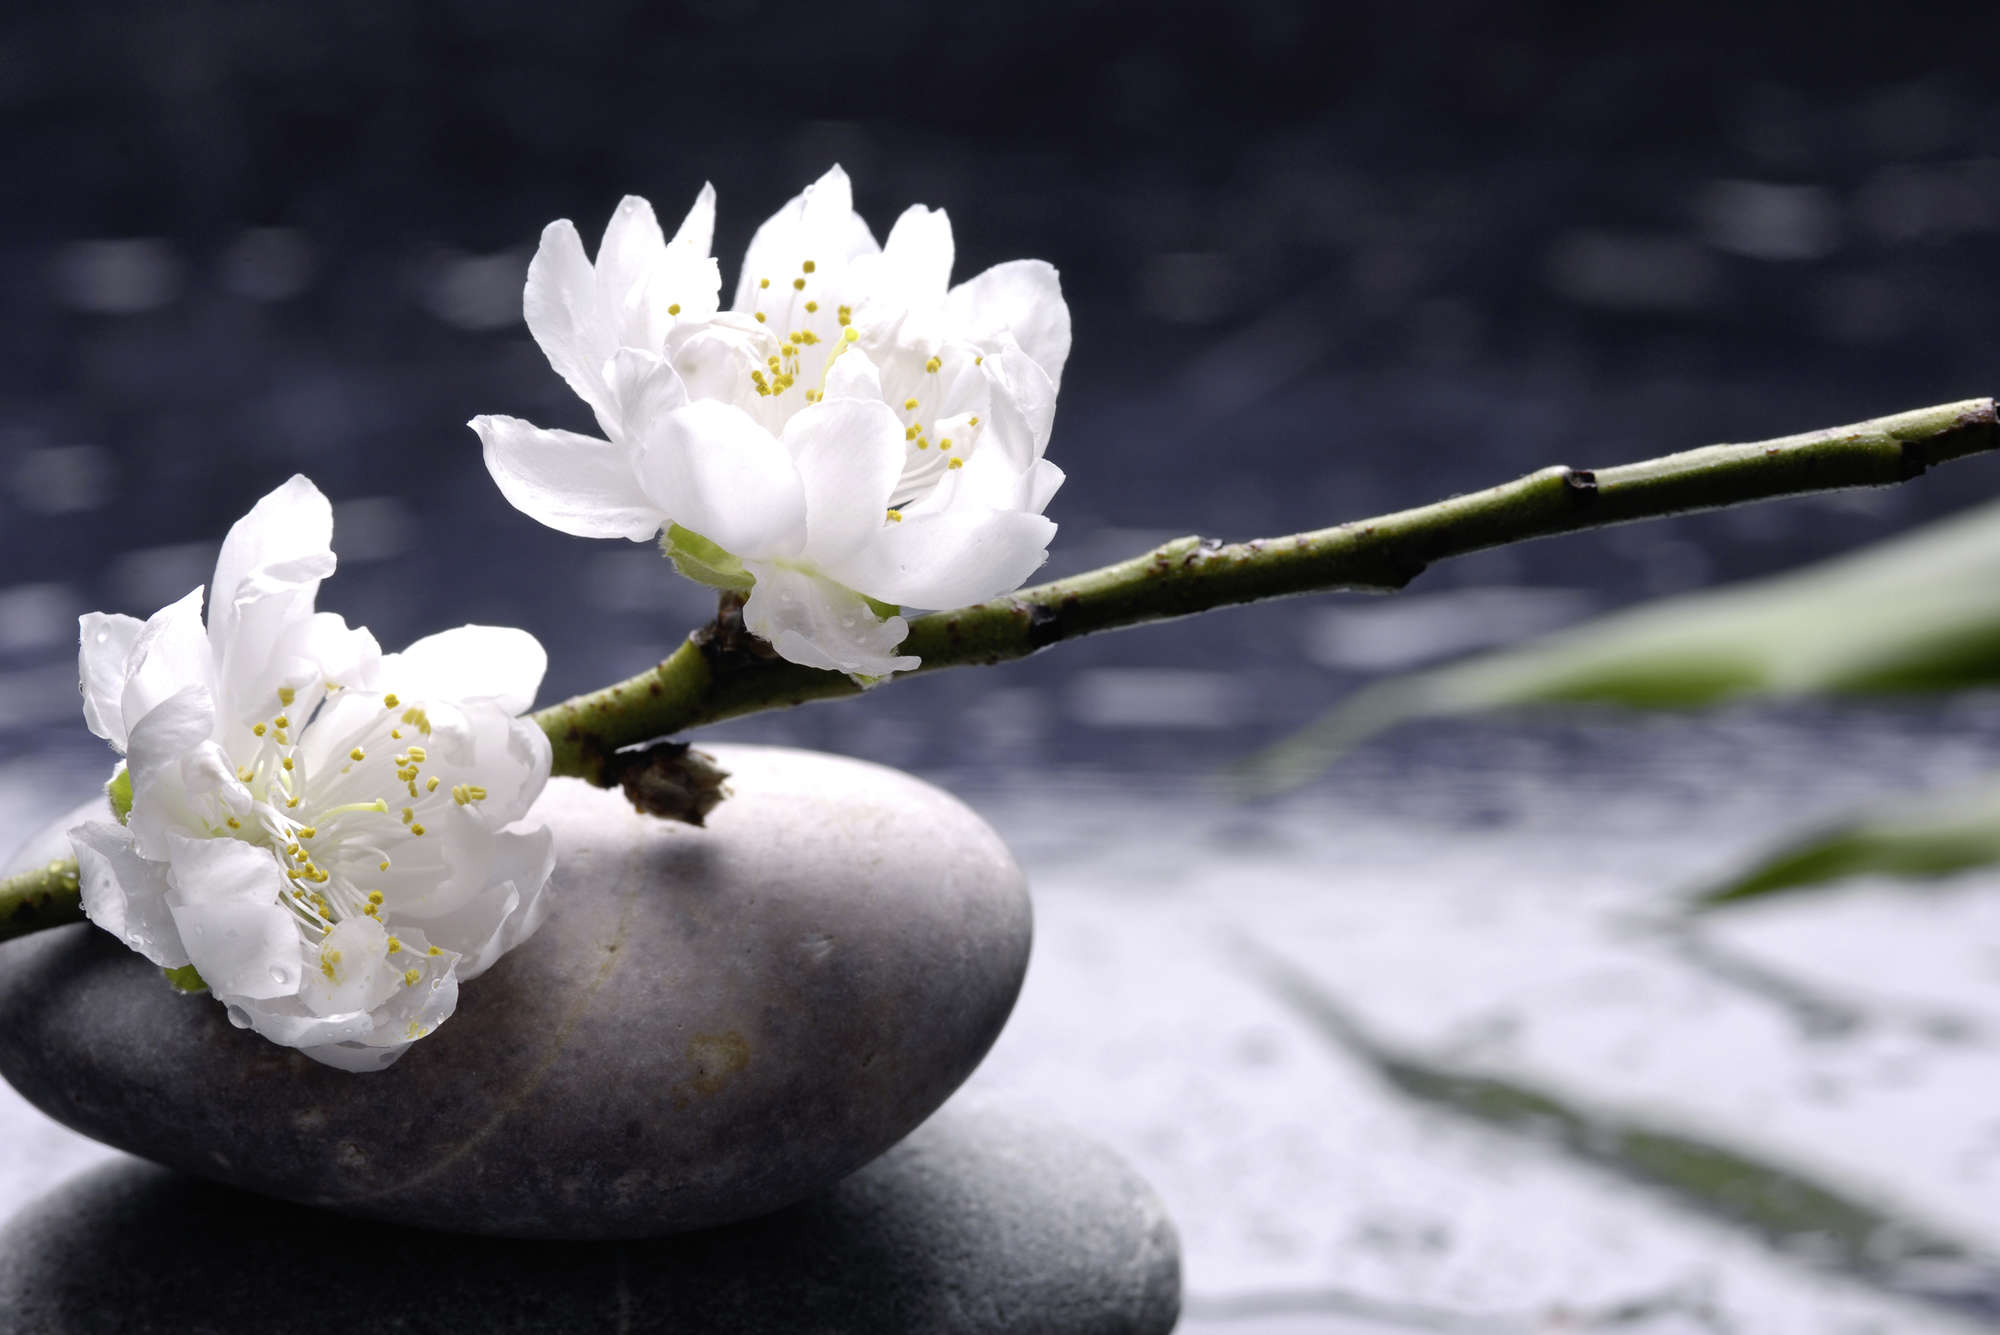             Fototapete Wellness Steine mit Blüten – Perlmutt Glattvlies
        